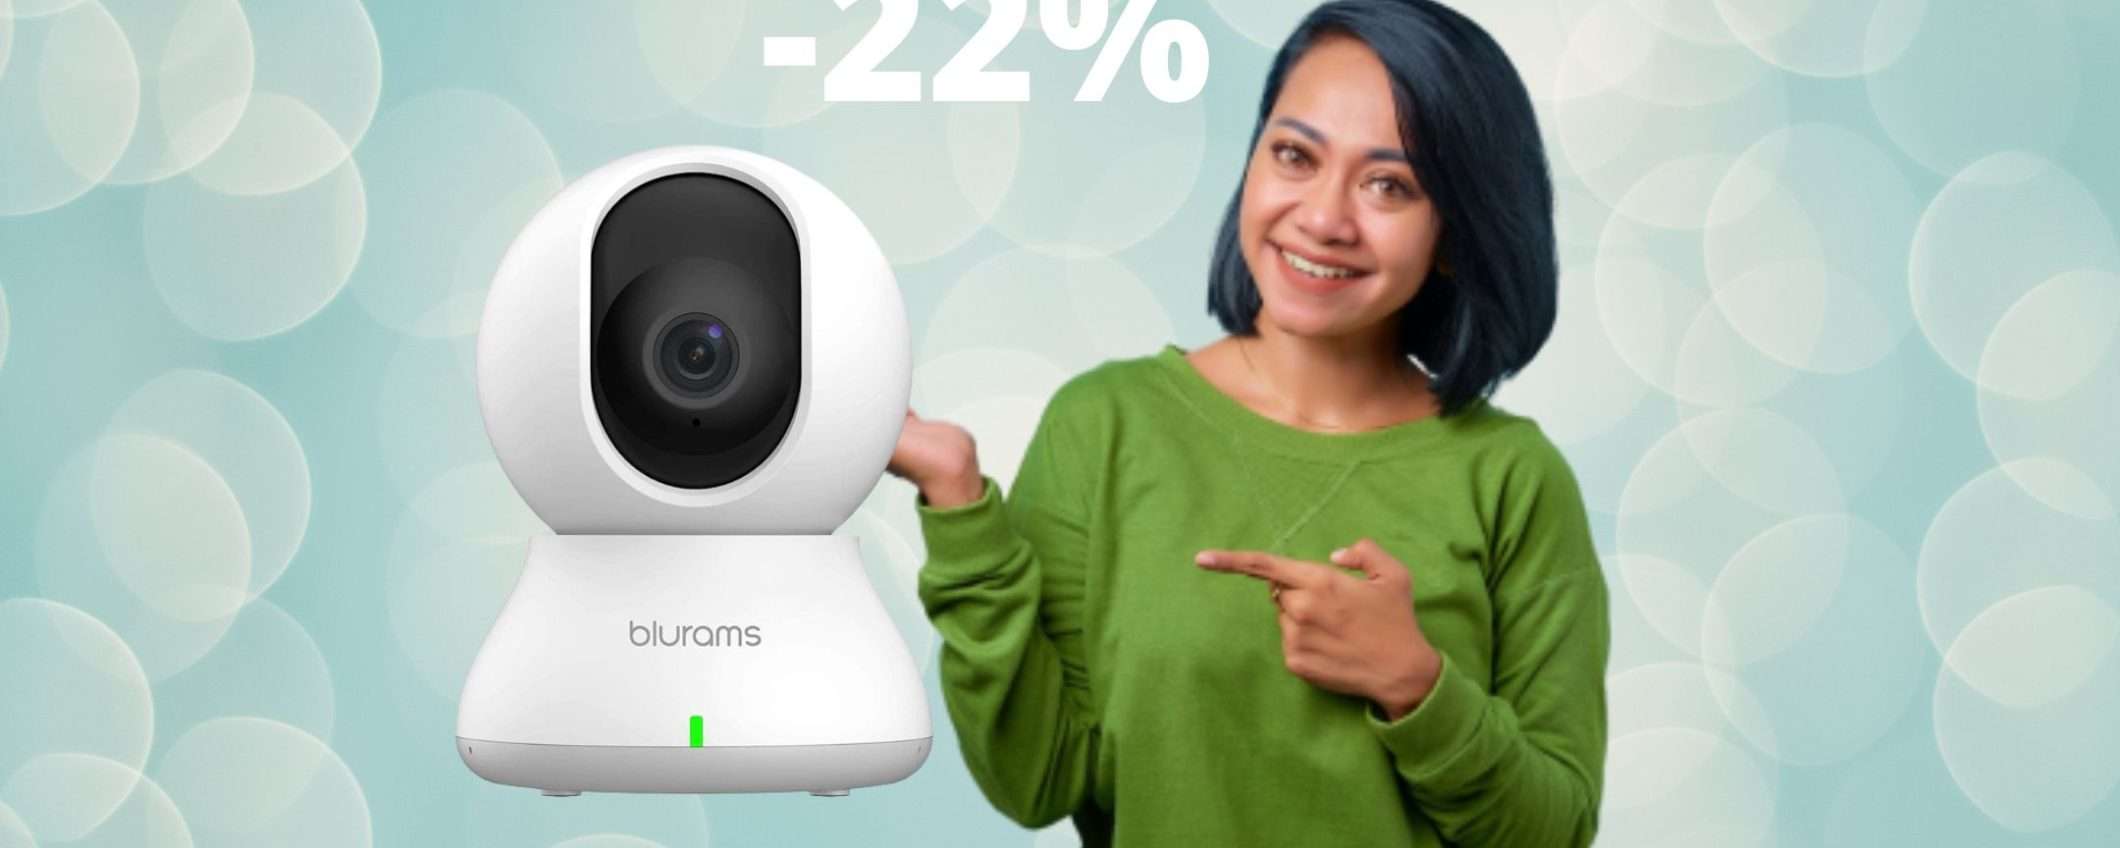 Videocamera di sorveglianza per interni: incredibile offerta su Amazon